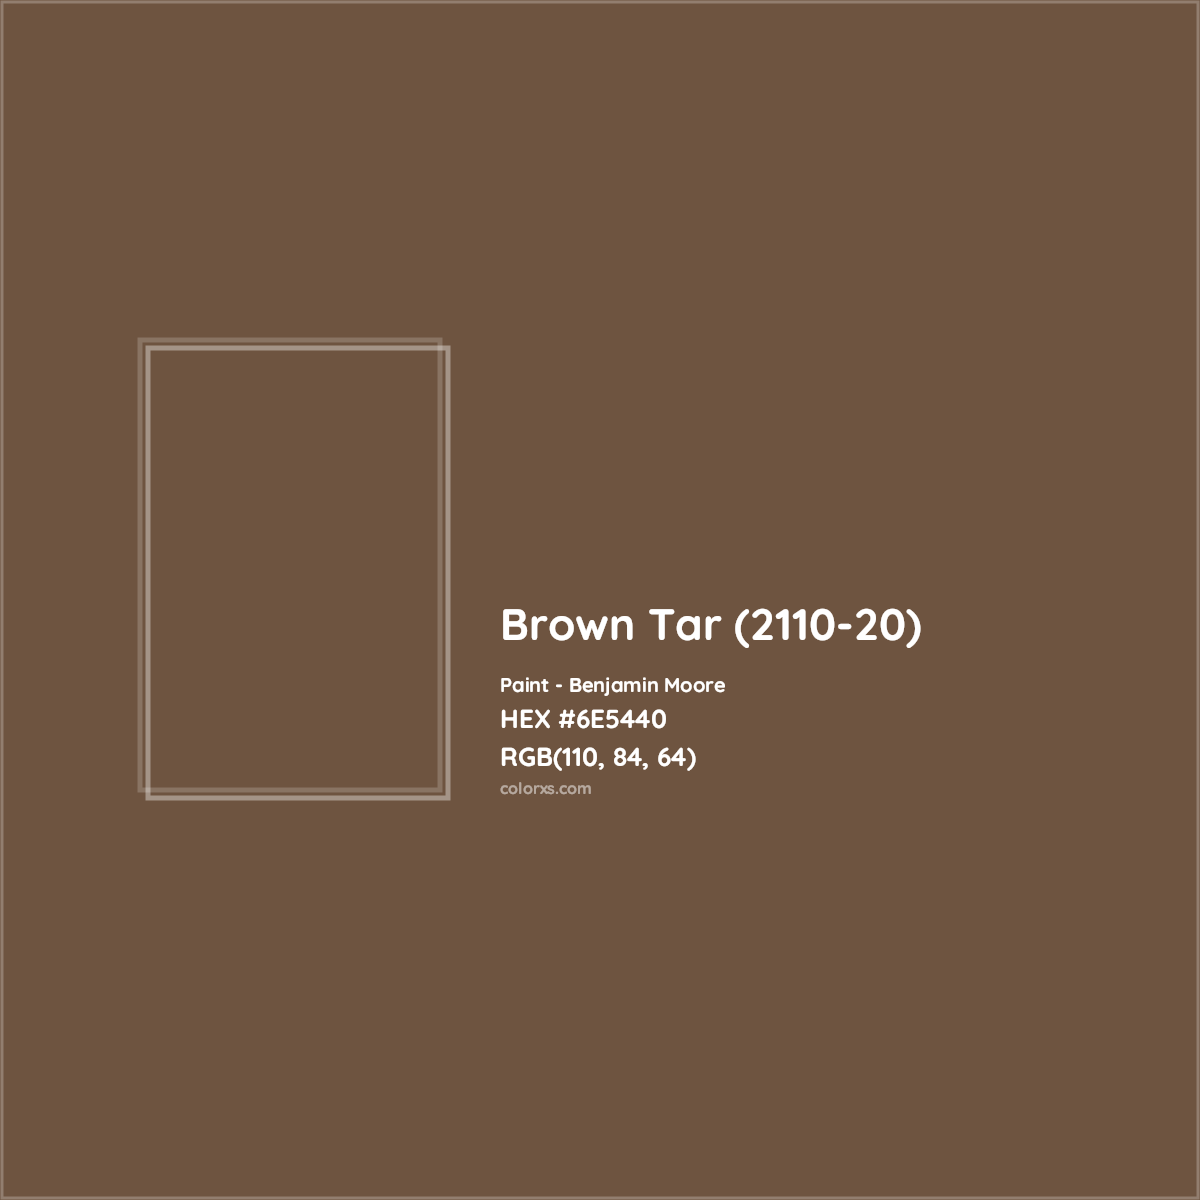 HEX #6E5440 Brown Tar (2110-20) Paint Benjamin Moore - Color Code